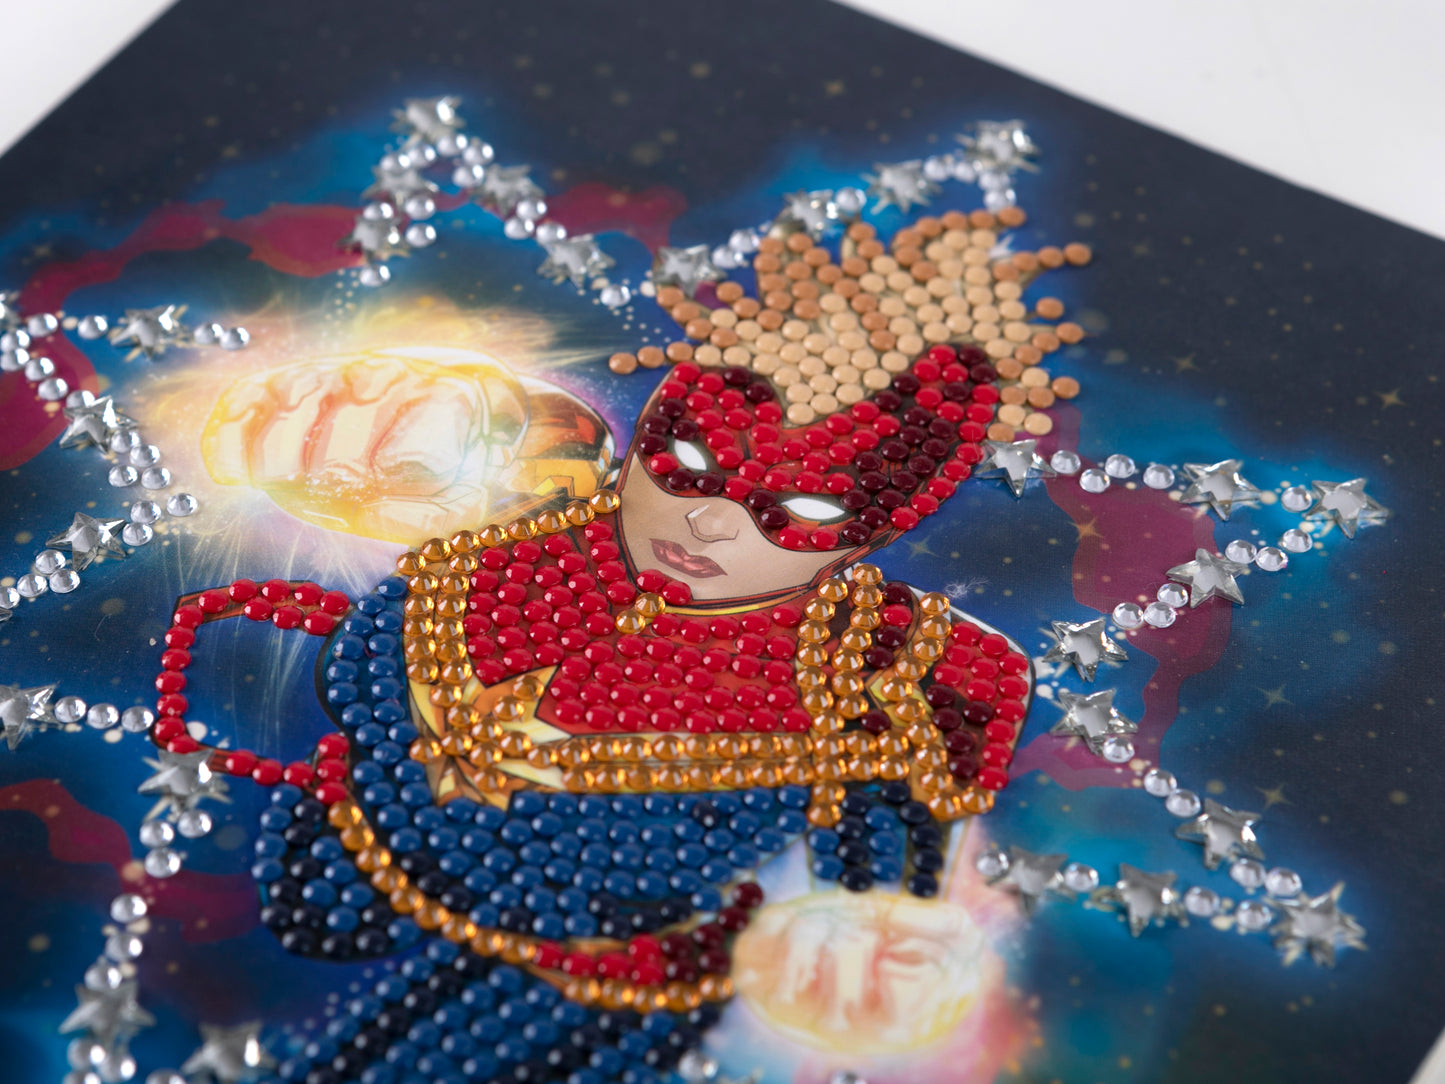 Captain Marvel 18x18cm Crystal Art Card